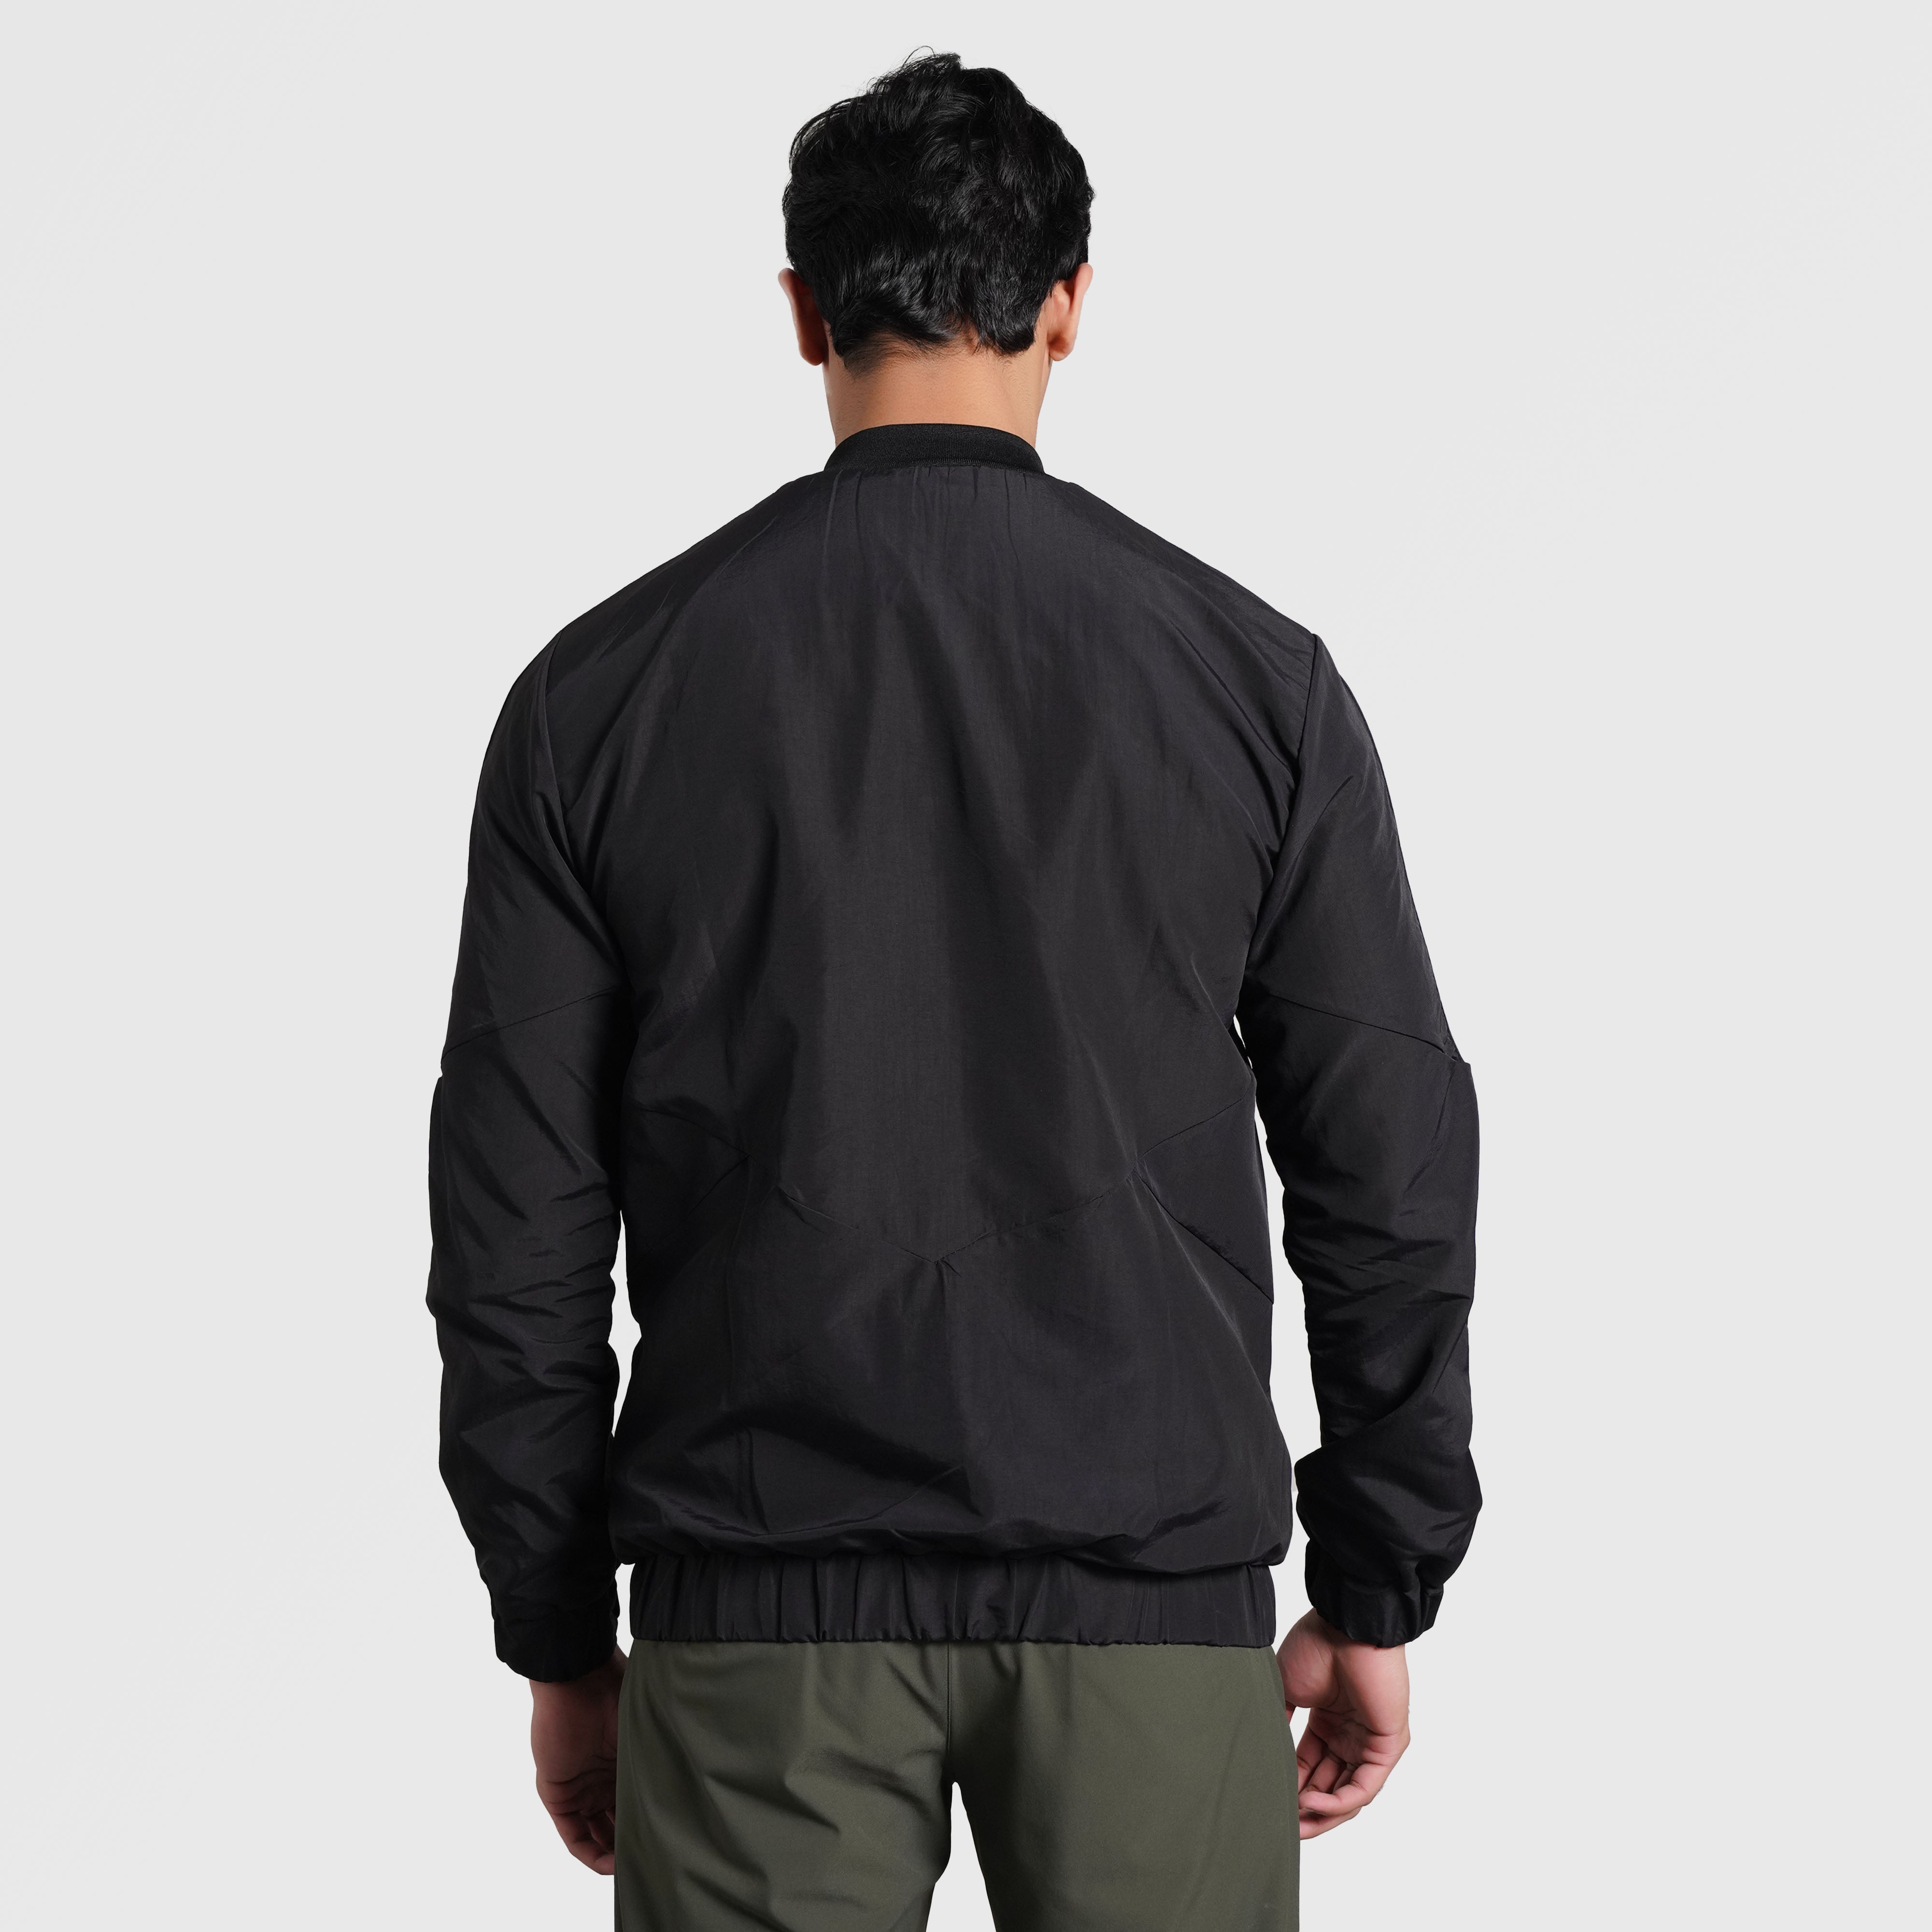 Foundation Jacket (Black)